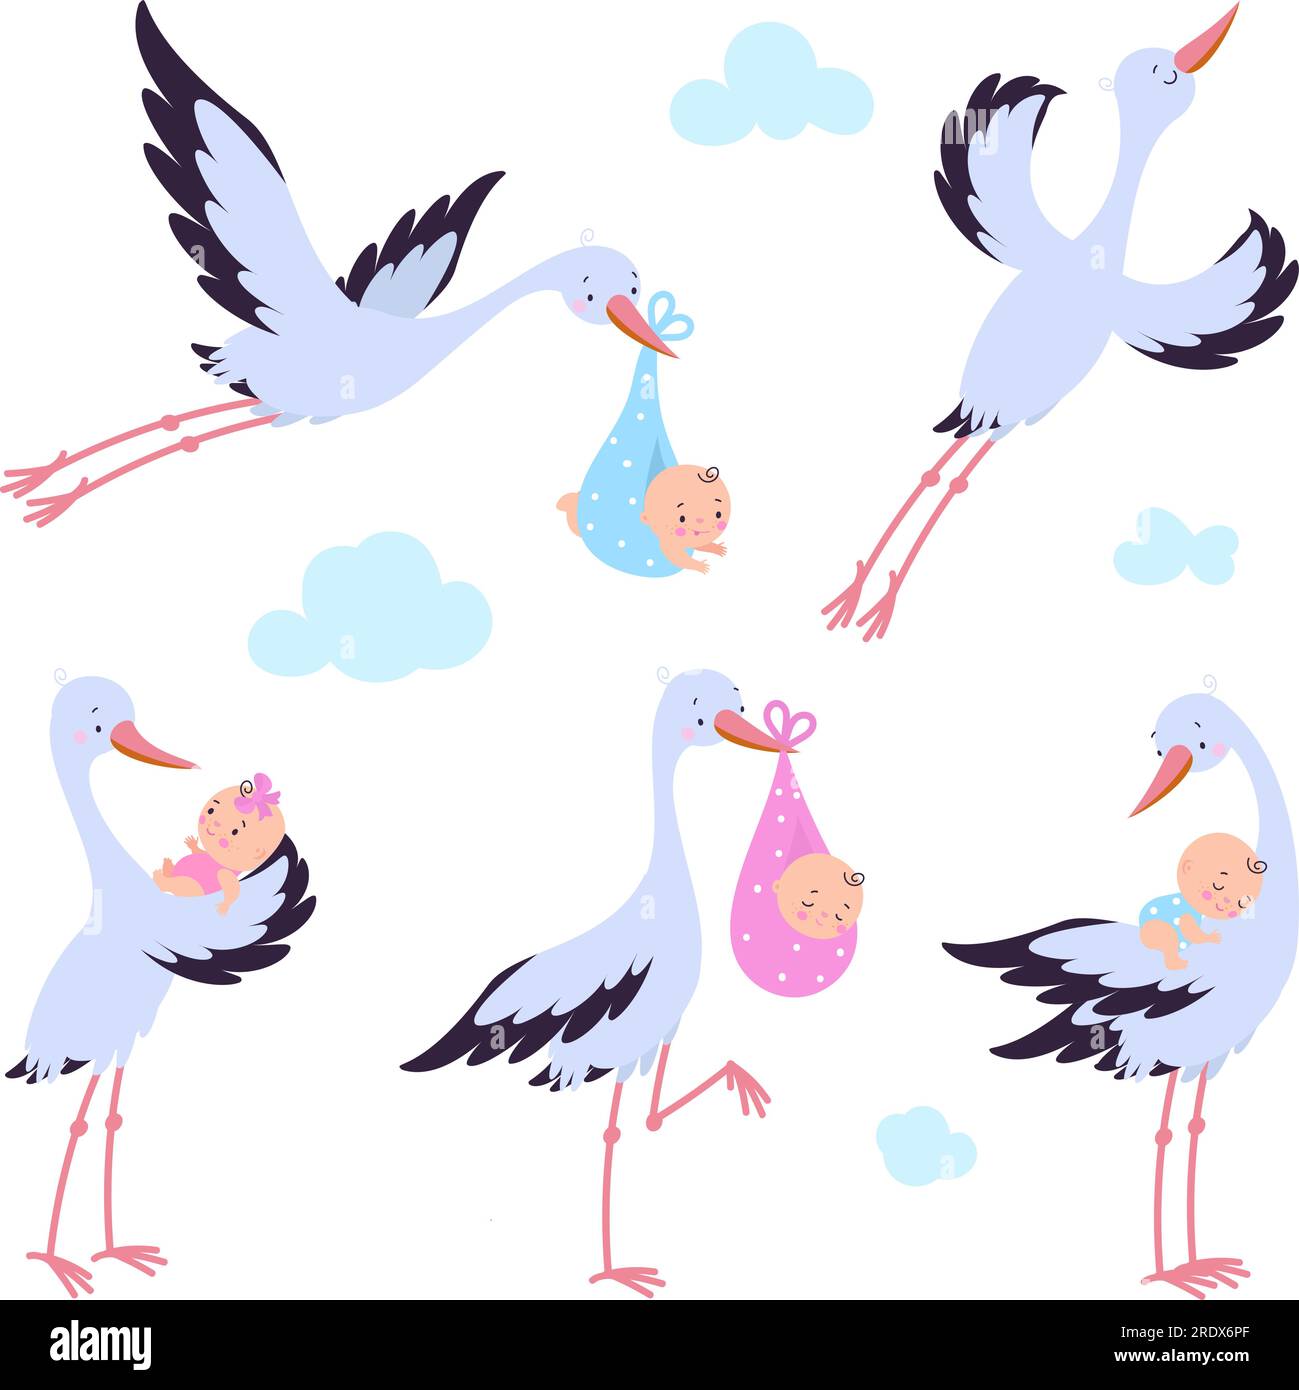 Cartoon fliegende Störche mit Neugeborenen. Vogelwanderung, Storch hält Babys und fliegt. Niedliche Grafikelemente für die Babyparty, die heutigen Vektorfiguren Stock Vektor